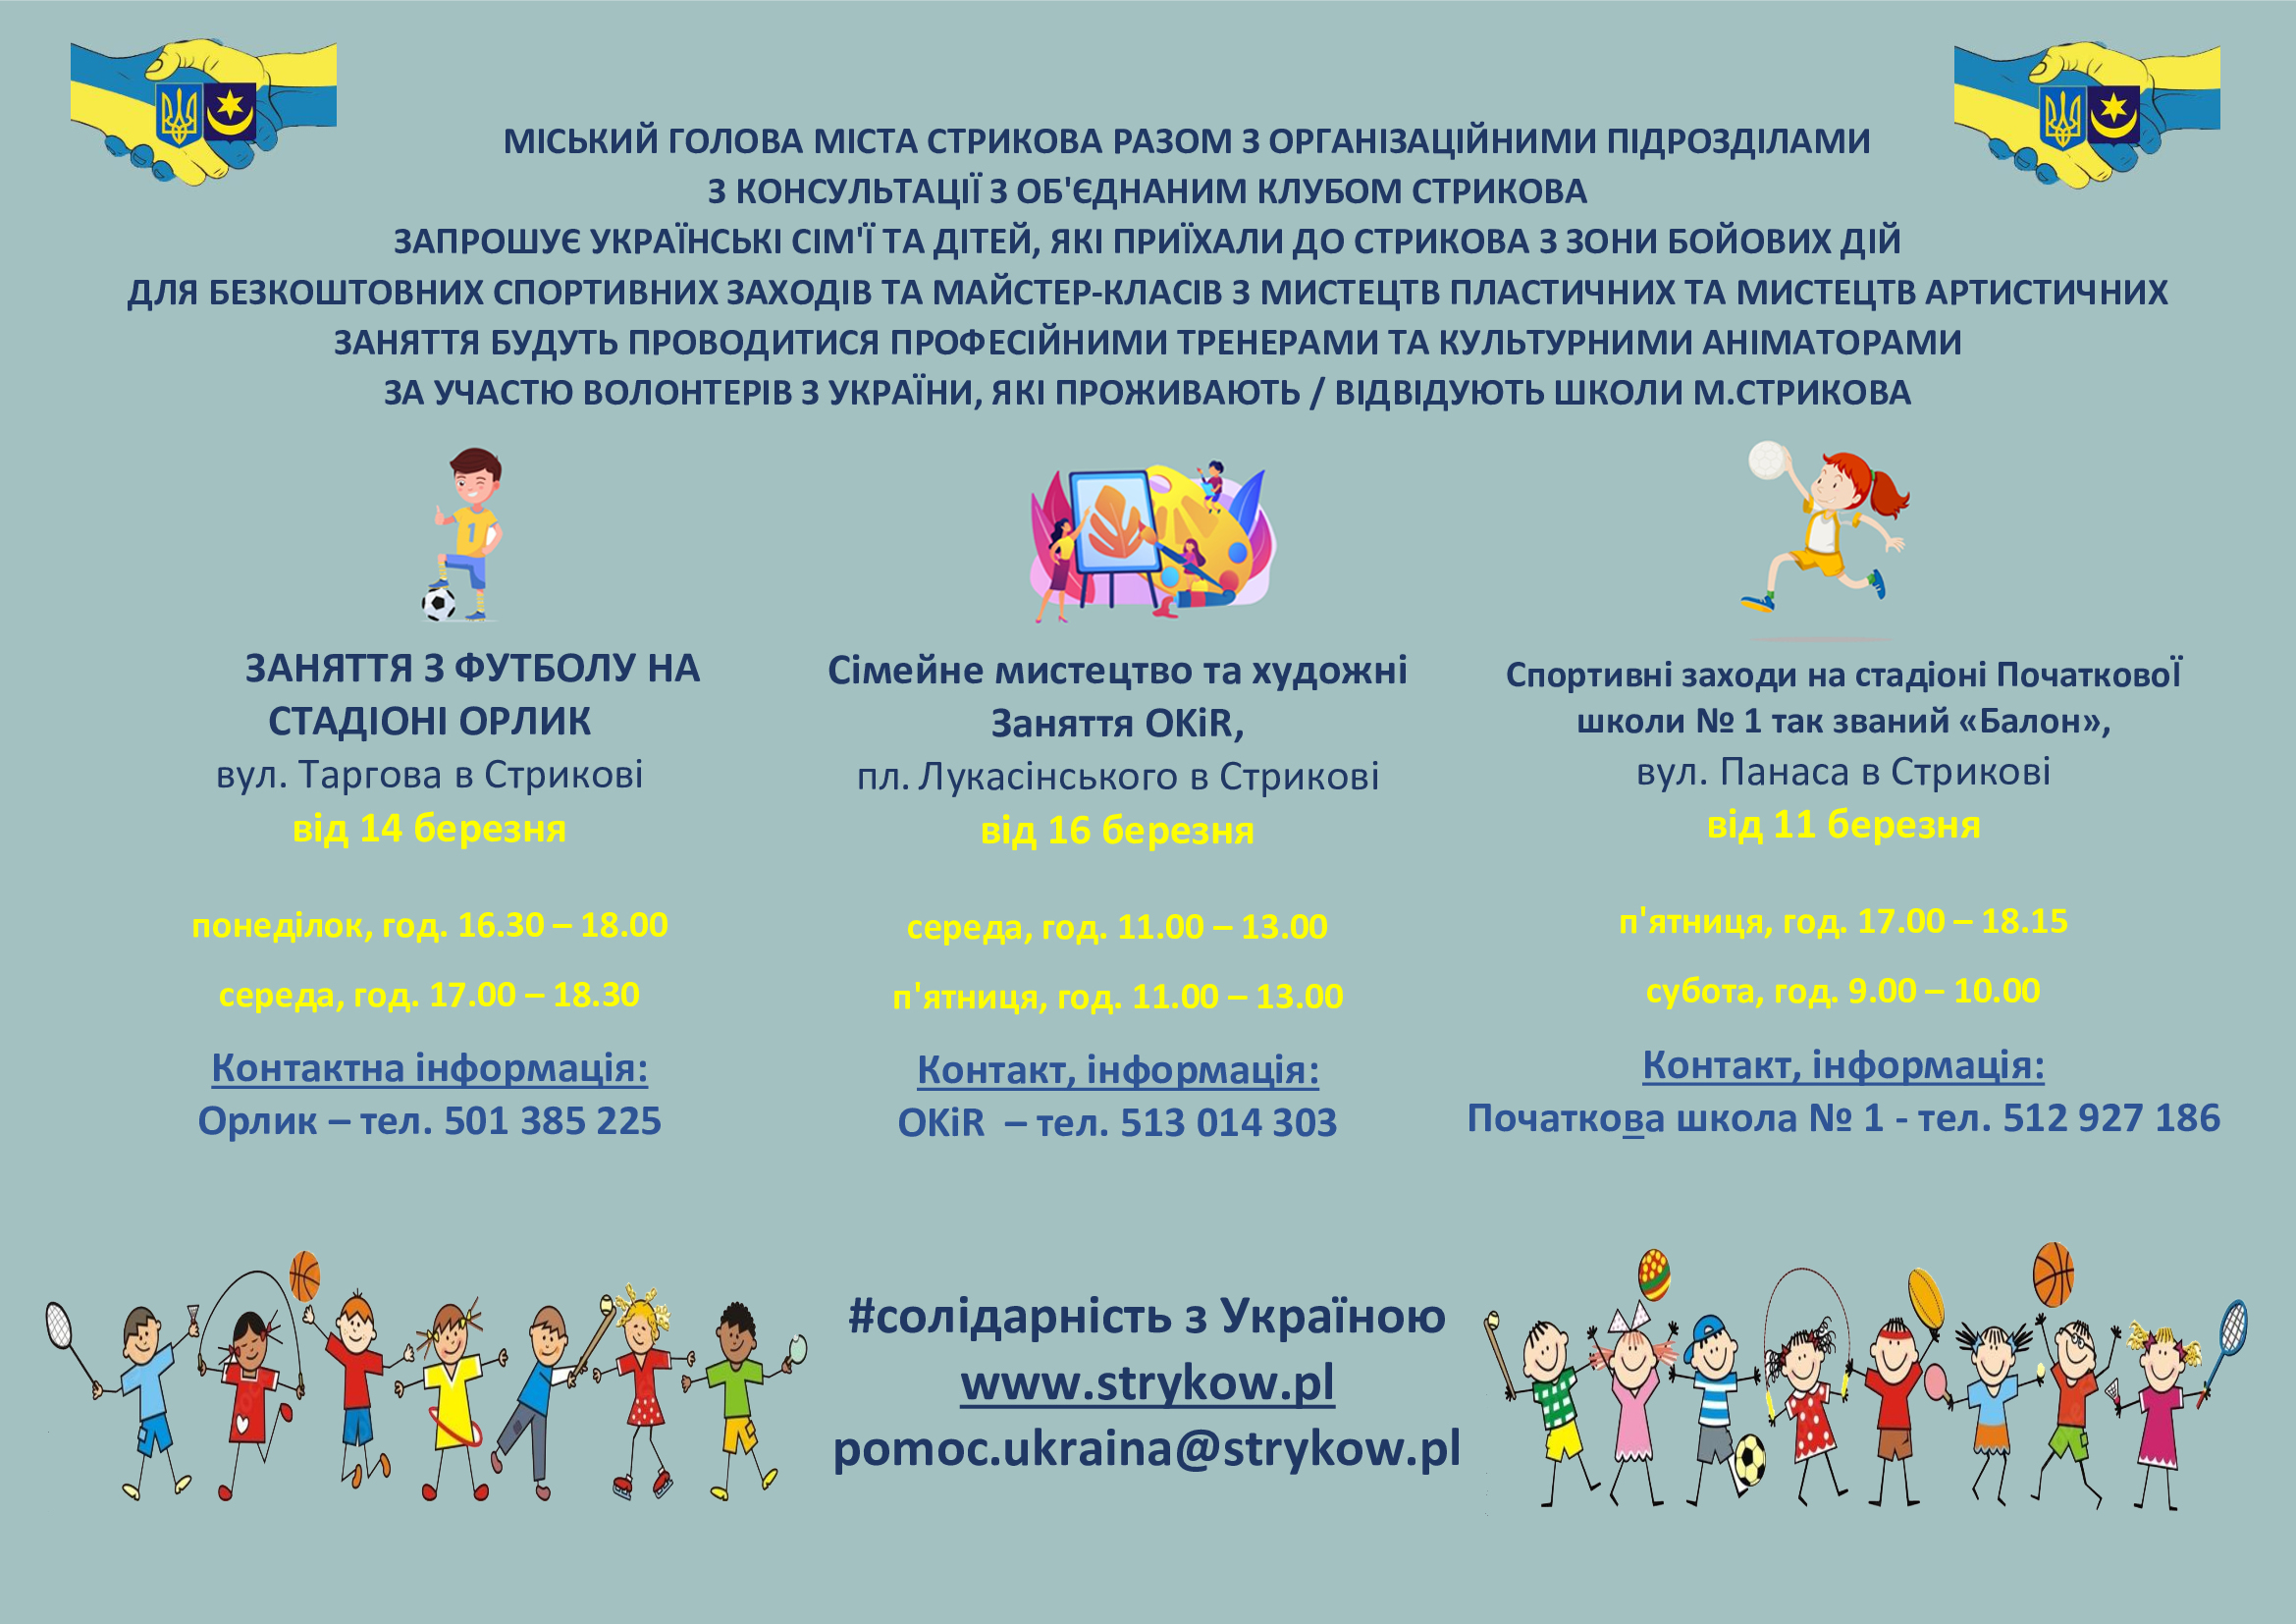 Zapraszamy na zajęcia sportowe i plastyczne dzieci uchodźców z Ukrainy